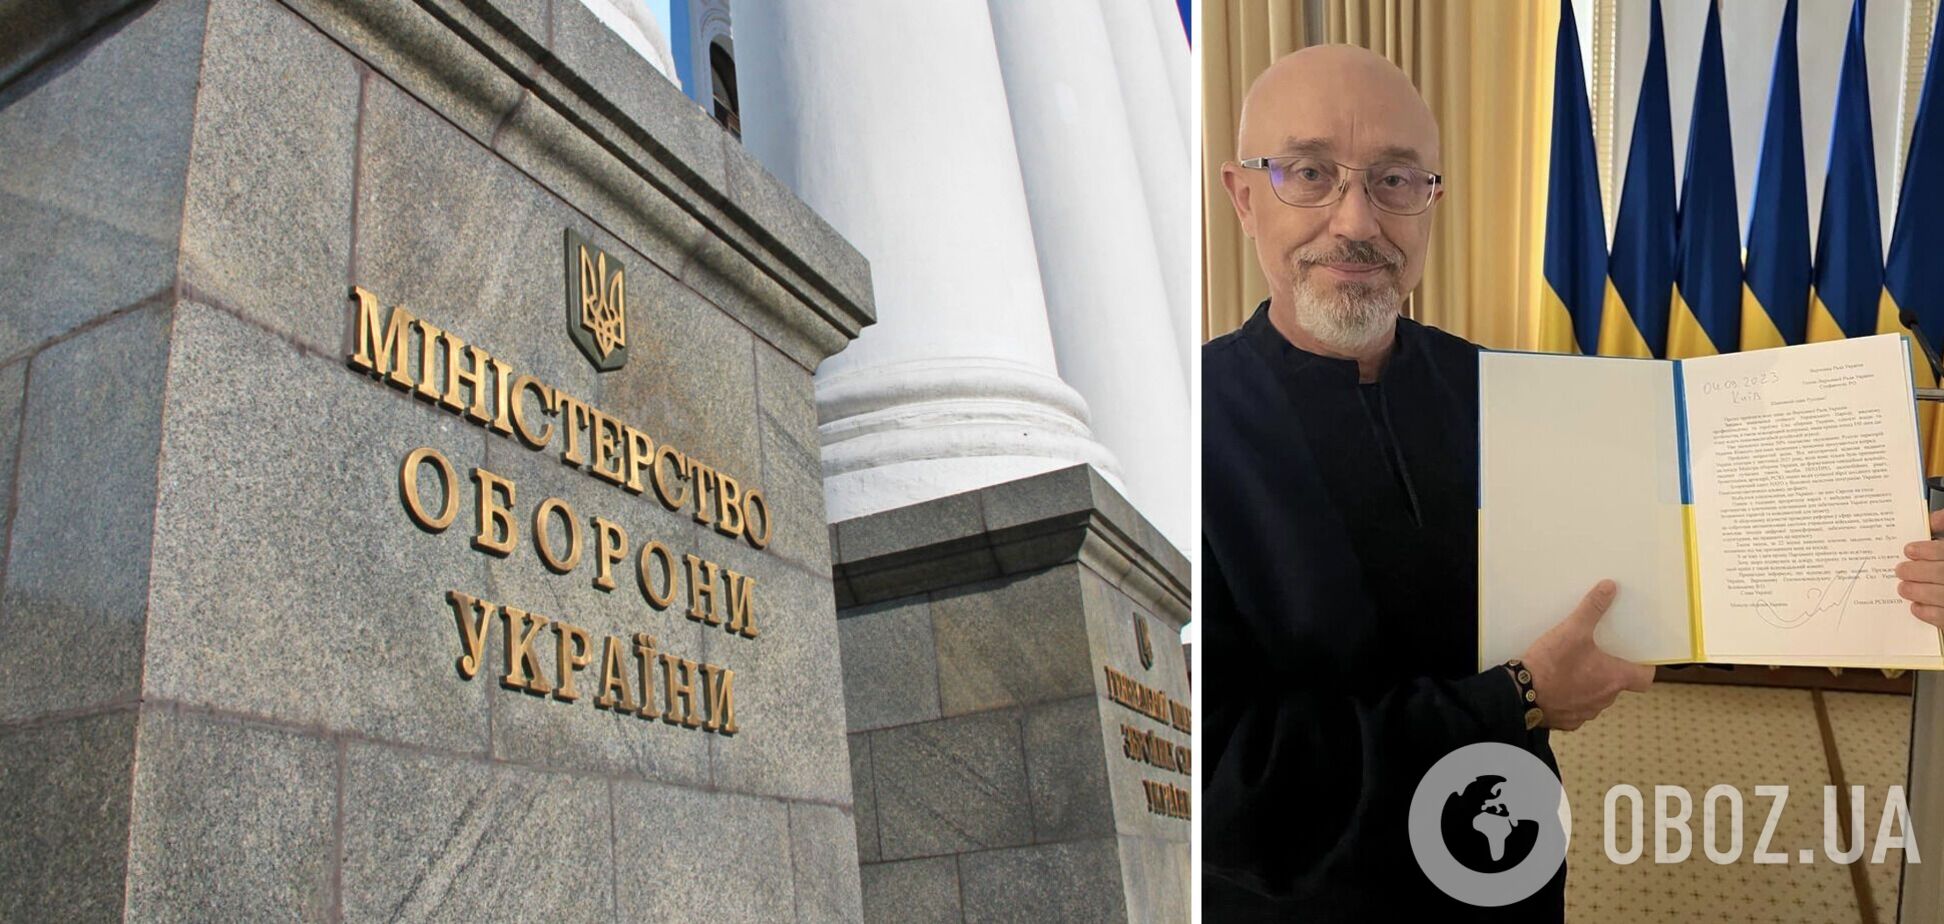 Резніков подав заяву про відставку з поста міністра оборони: у комітеті Ради підтримали рішення